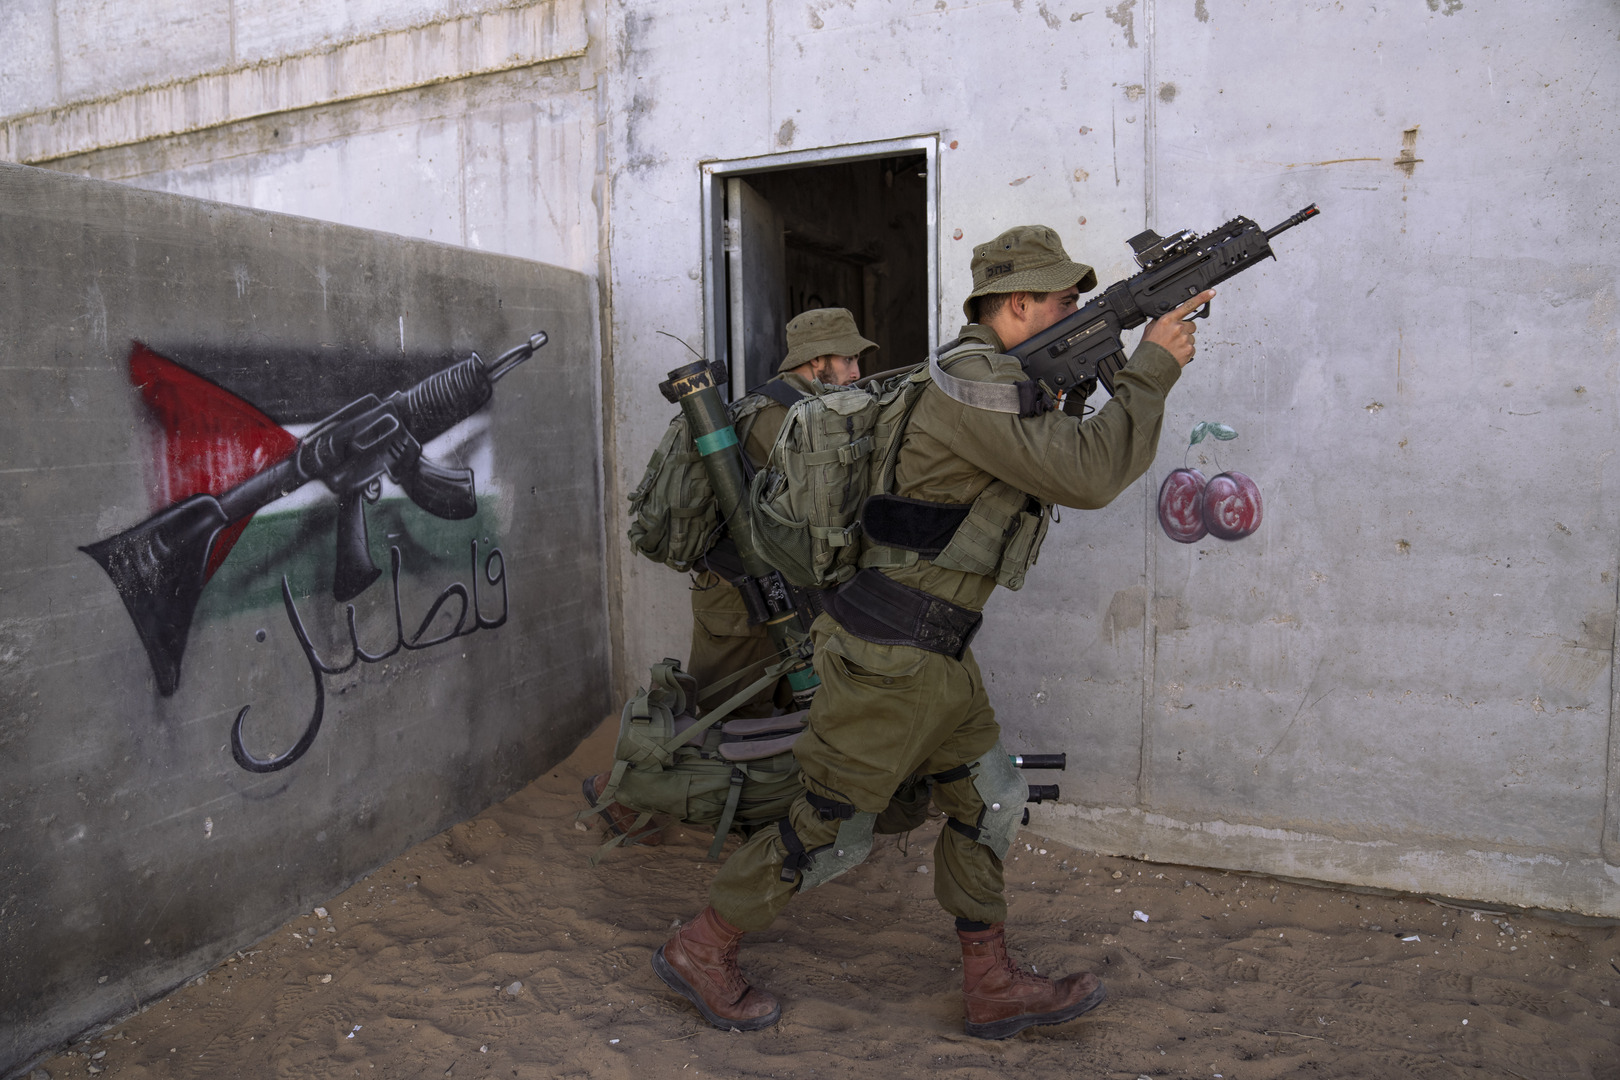 الجيش الإسرائيلي ينفذ حملة اقتحامات واعتقالات طالت 40 فلسطينيا بالضفة الغربية (فيديوهات)